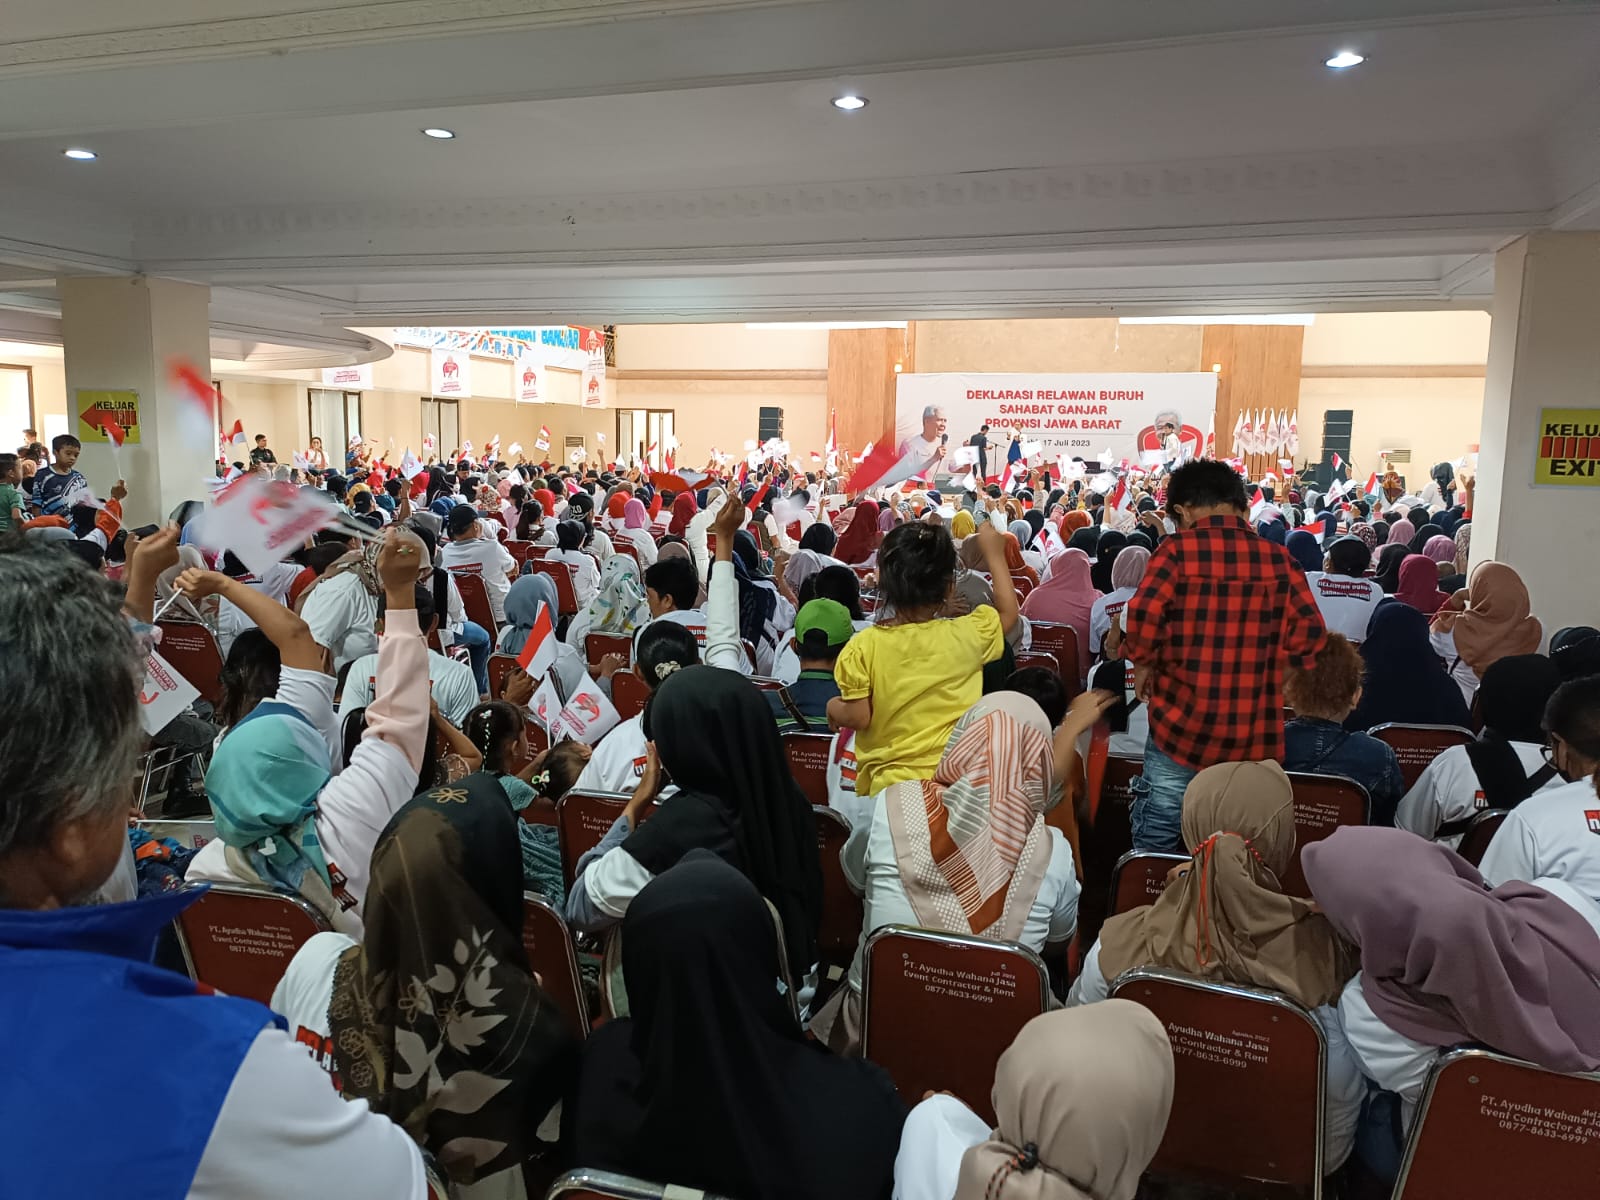 Ribuan buruh berkumpul di Cimahi Convention Hall (CHH) mendeklarasikan diri menjadi 'Relawan Buruh Sahabat Ganjar'. / Cecep Herdi